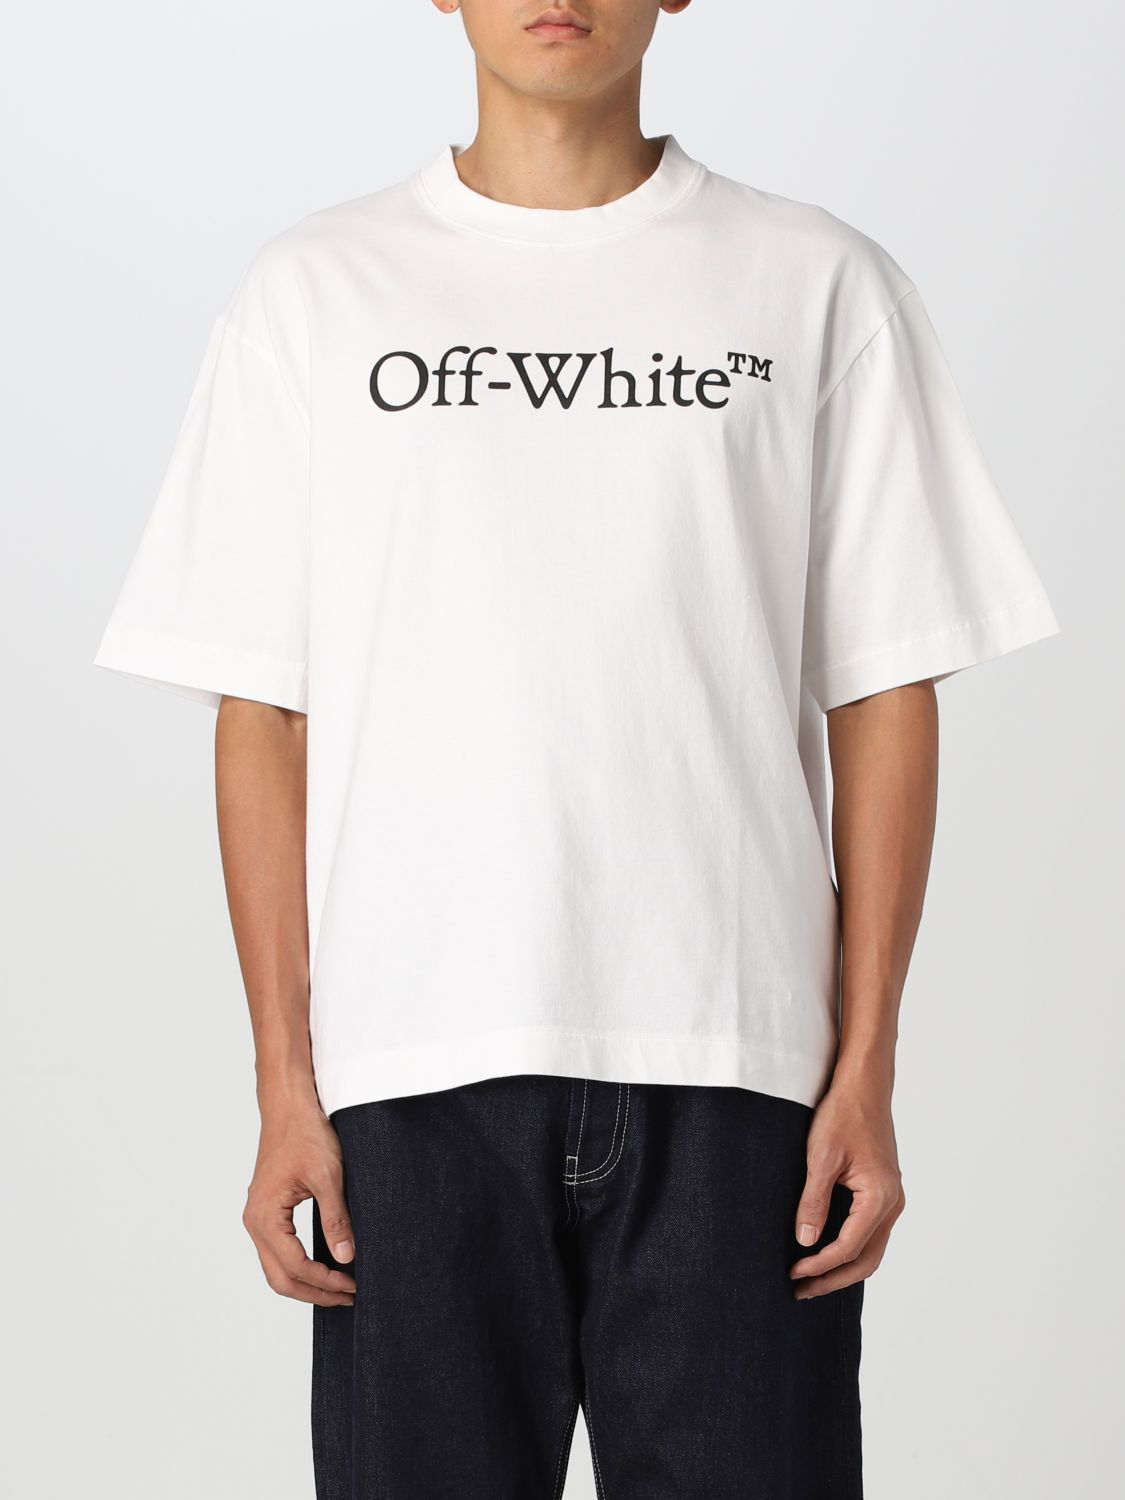 オフホワイト  OMAA120S22JER003 グラフィックデザインTシャツ  メンズ XXL